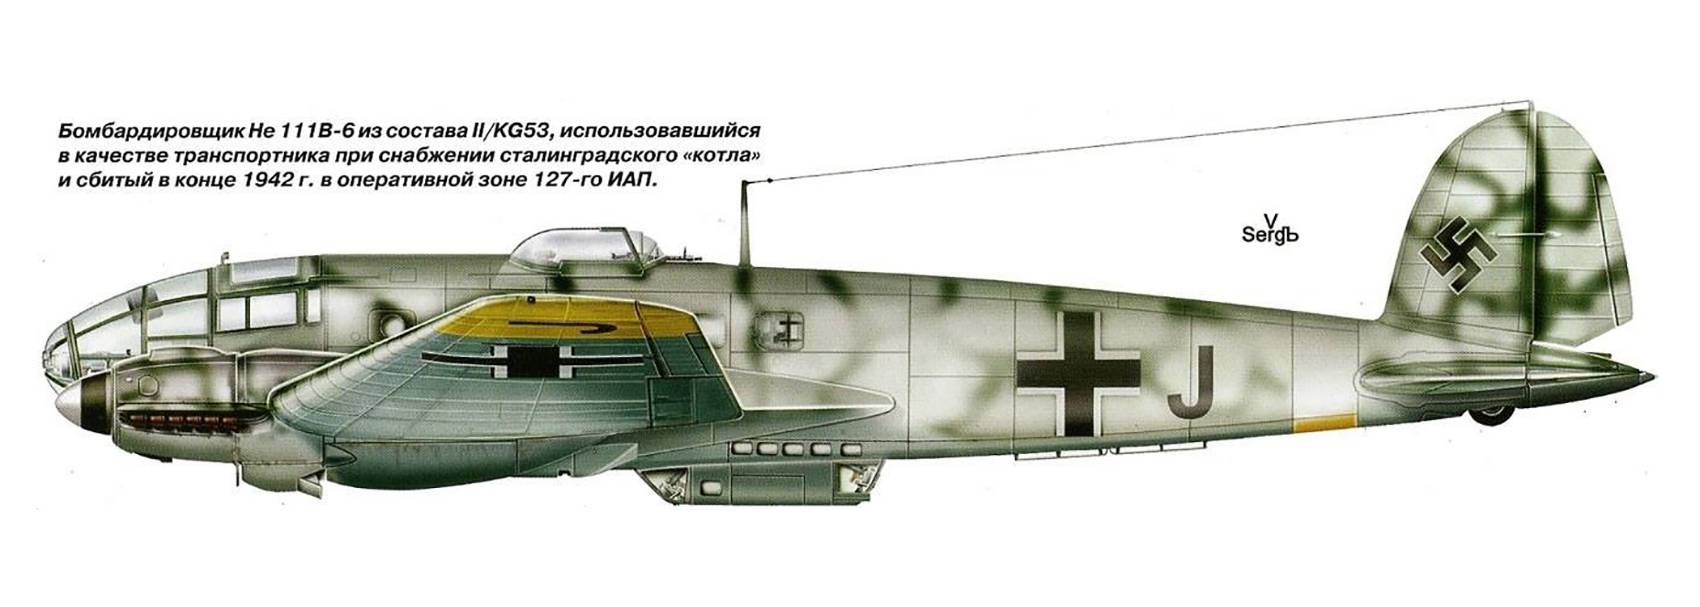 Средний бомбардировщик хейнкель he 111 warbirds самолеты второй мировой войны